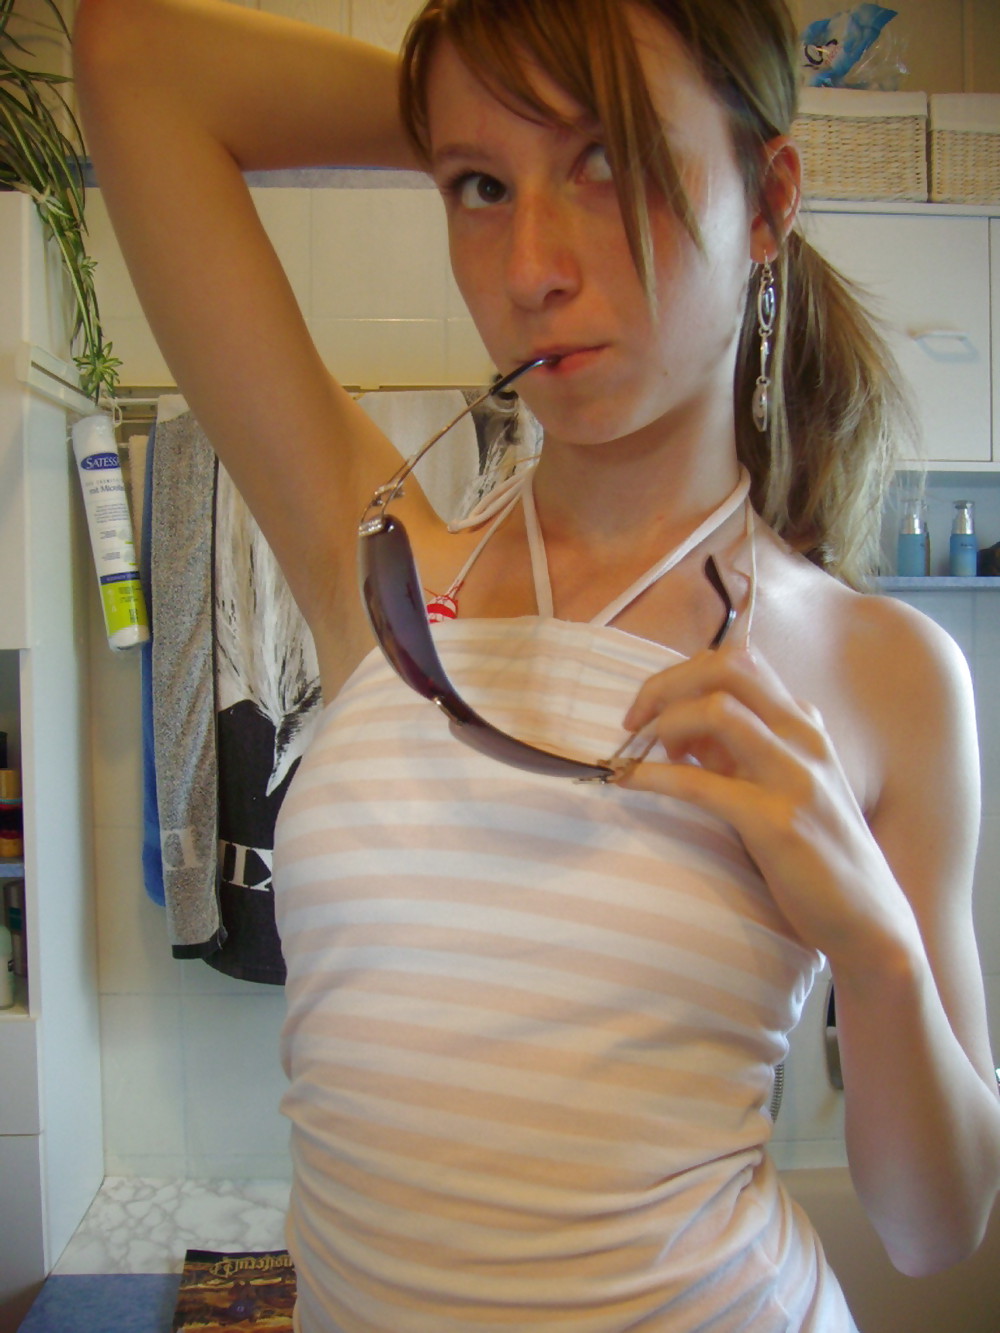 Porn Pics Teenage girl selfshot 19 yr old (Photo set)